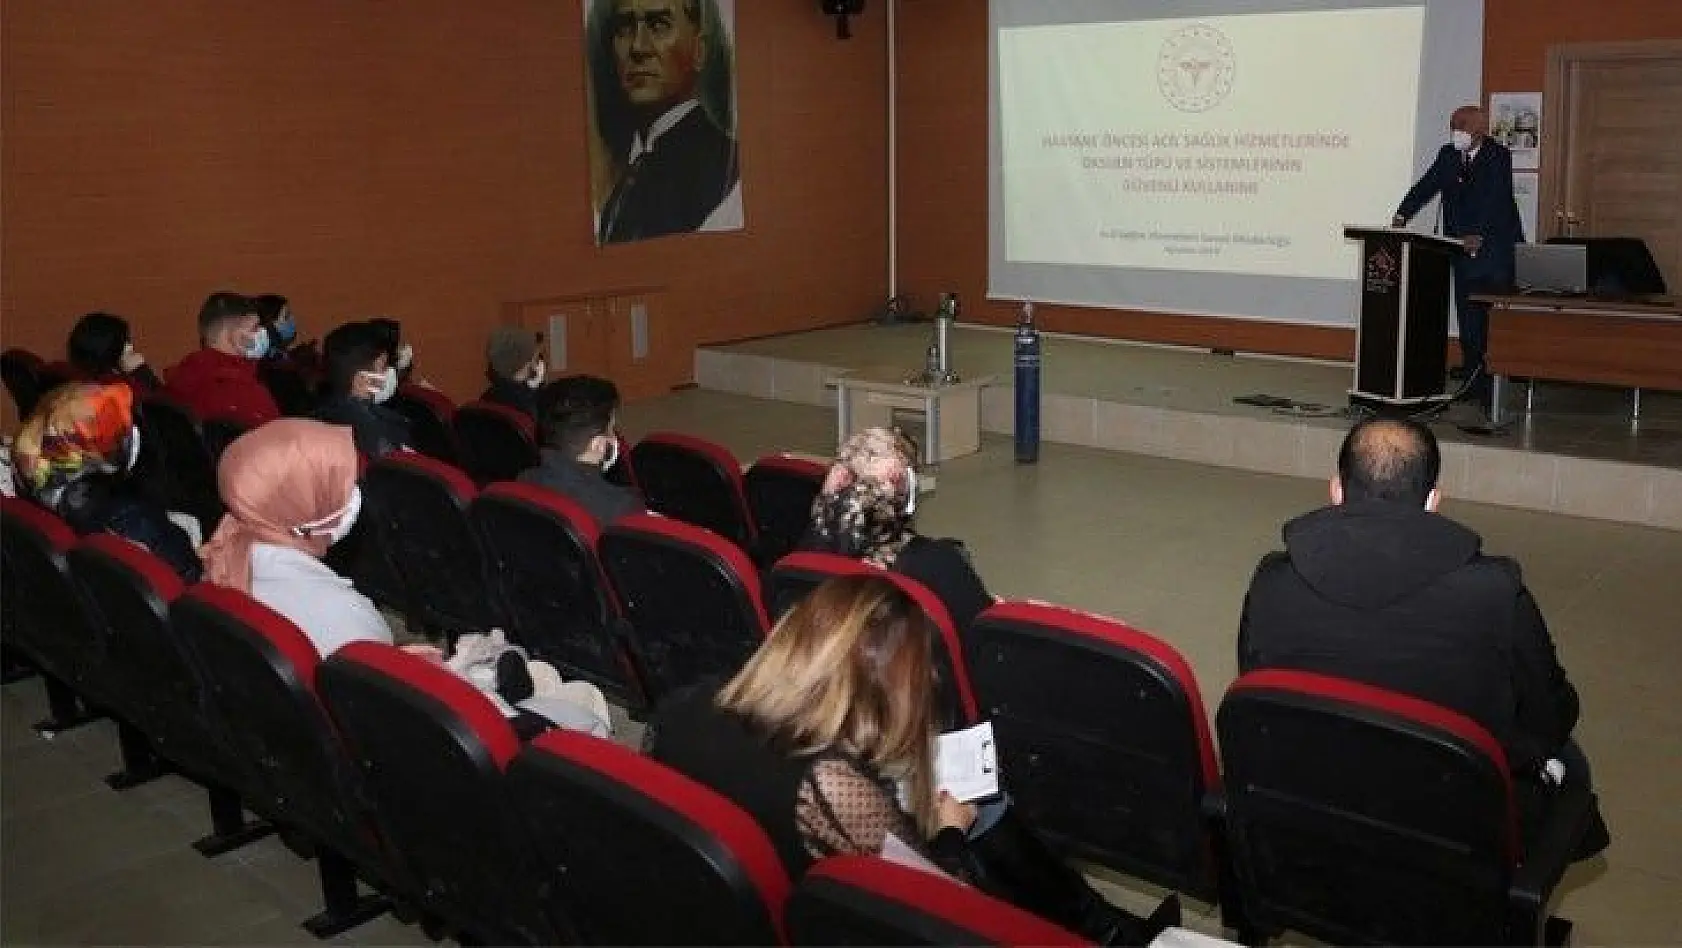 Elazığ'da sağlık ve bakım personeline eğitim